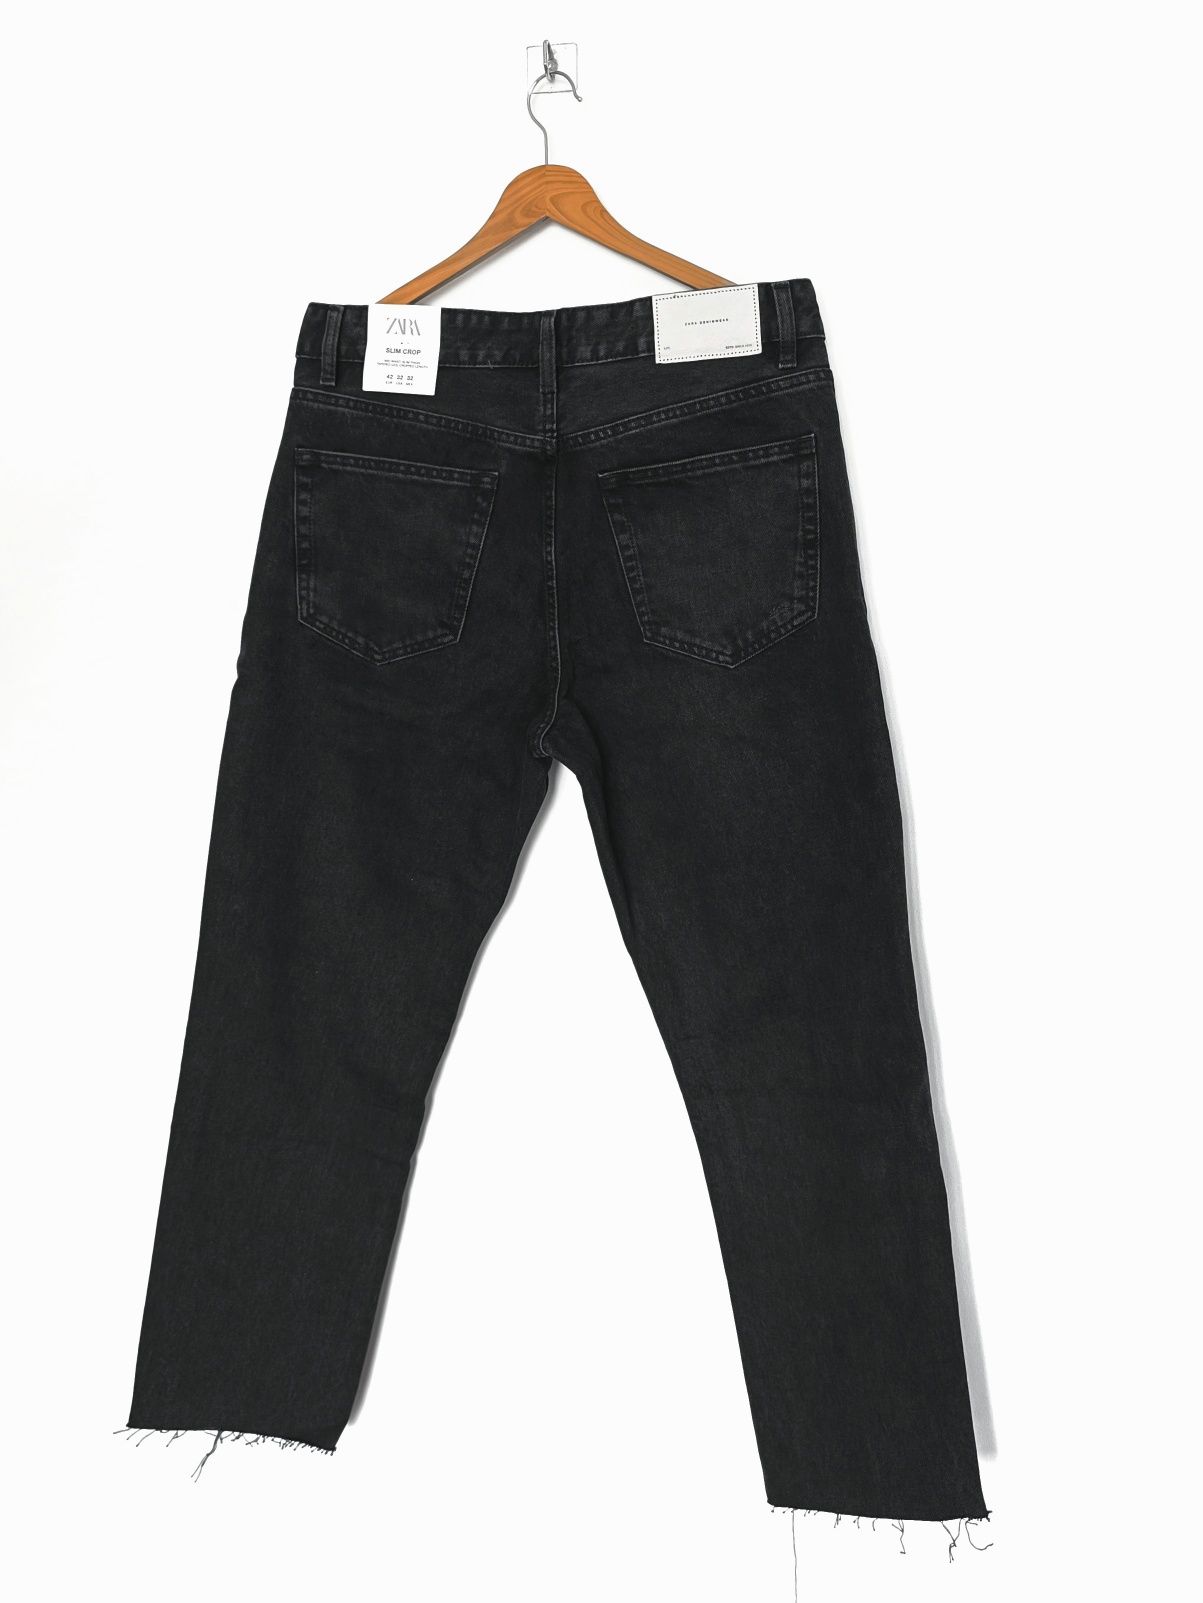 Spodnie jeansowe męskie z przetarciami o kroju Slim Crop | Zara EUR42